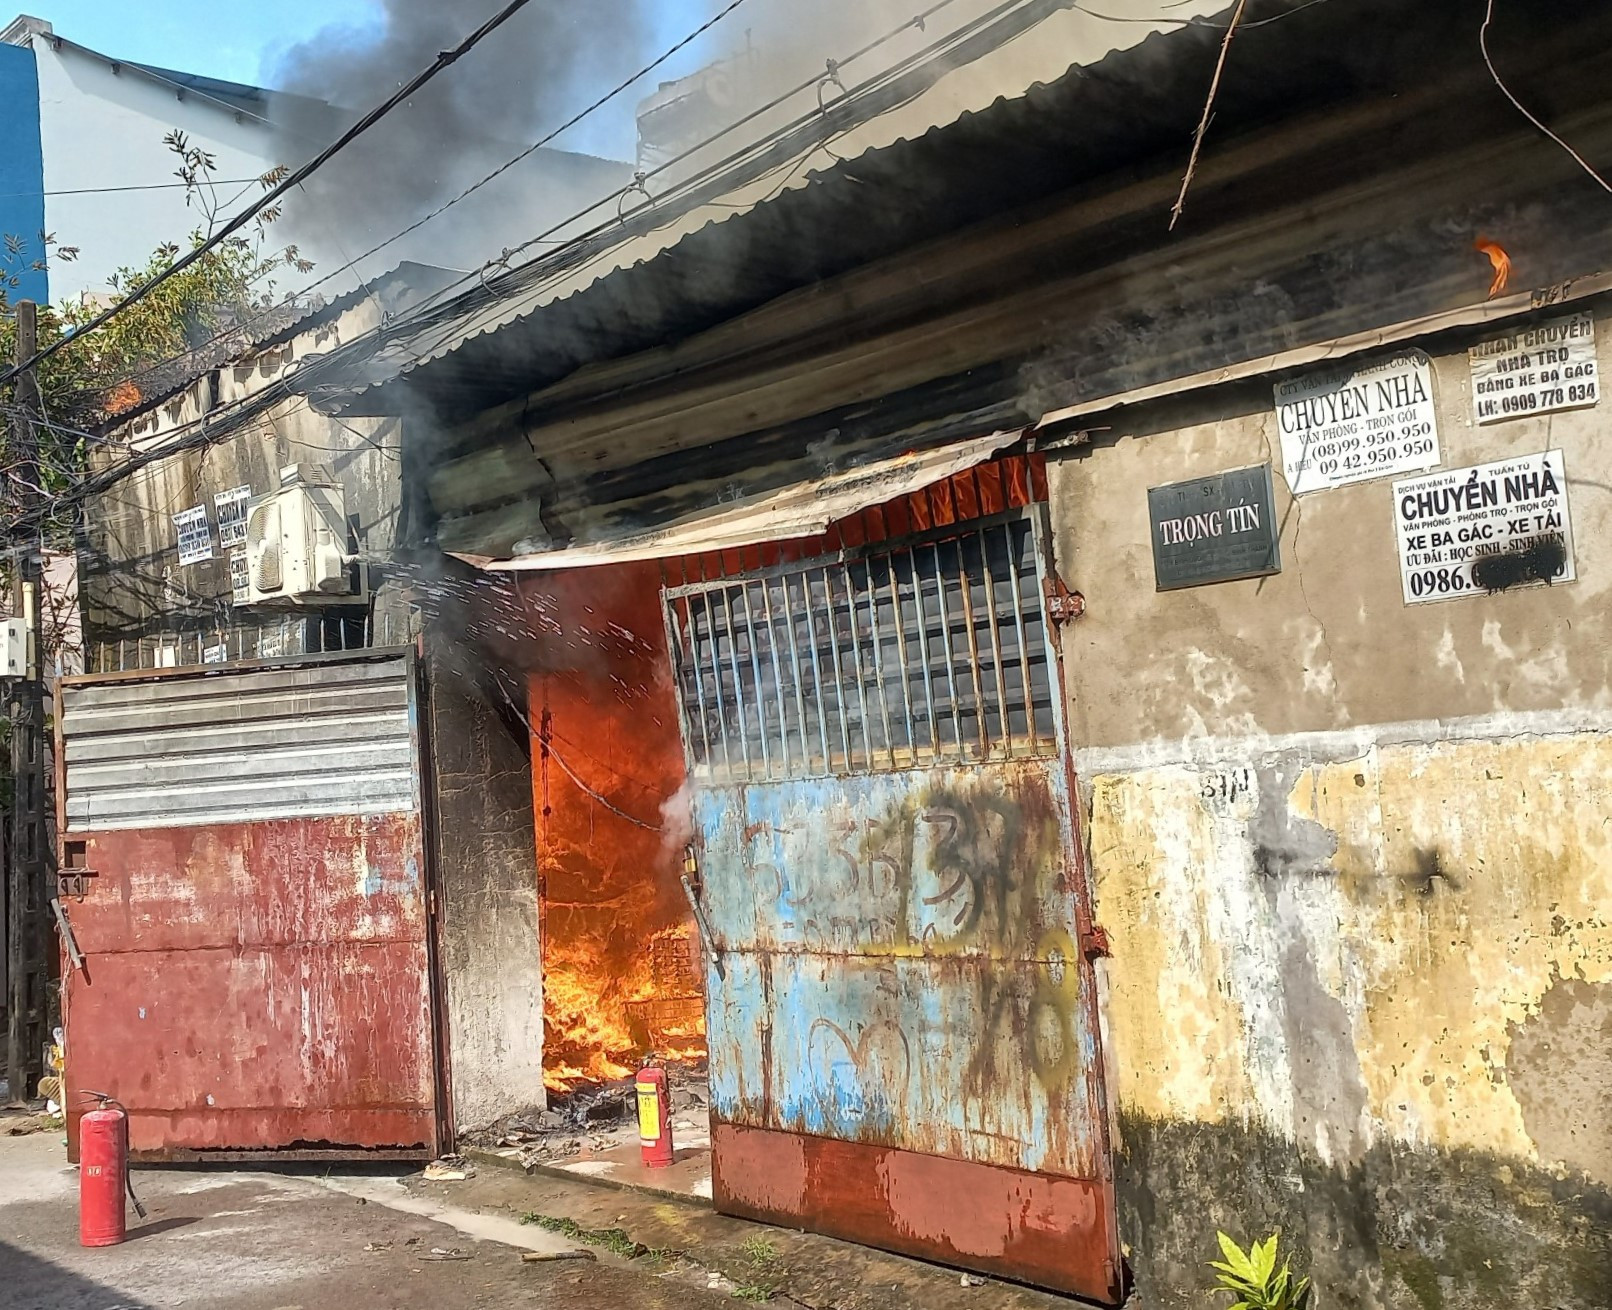 Cháy xưởng giấy giữa khu dân cư ở TP.HCM, nhiều người tháo chạy - Ảnh 1.